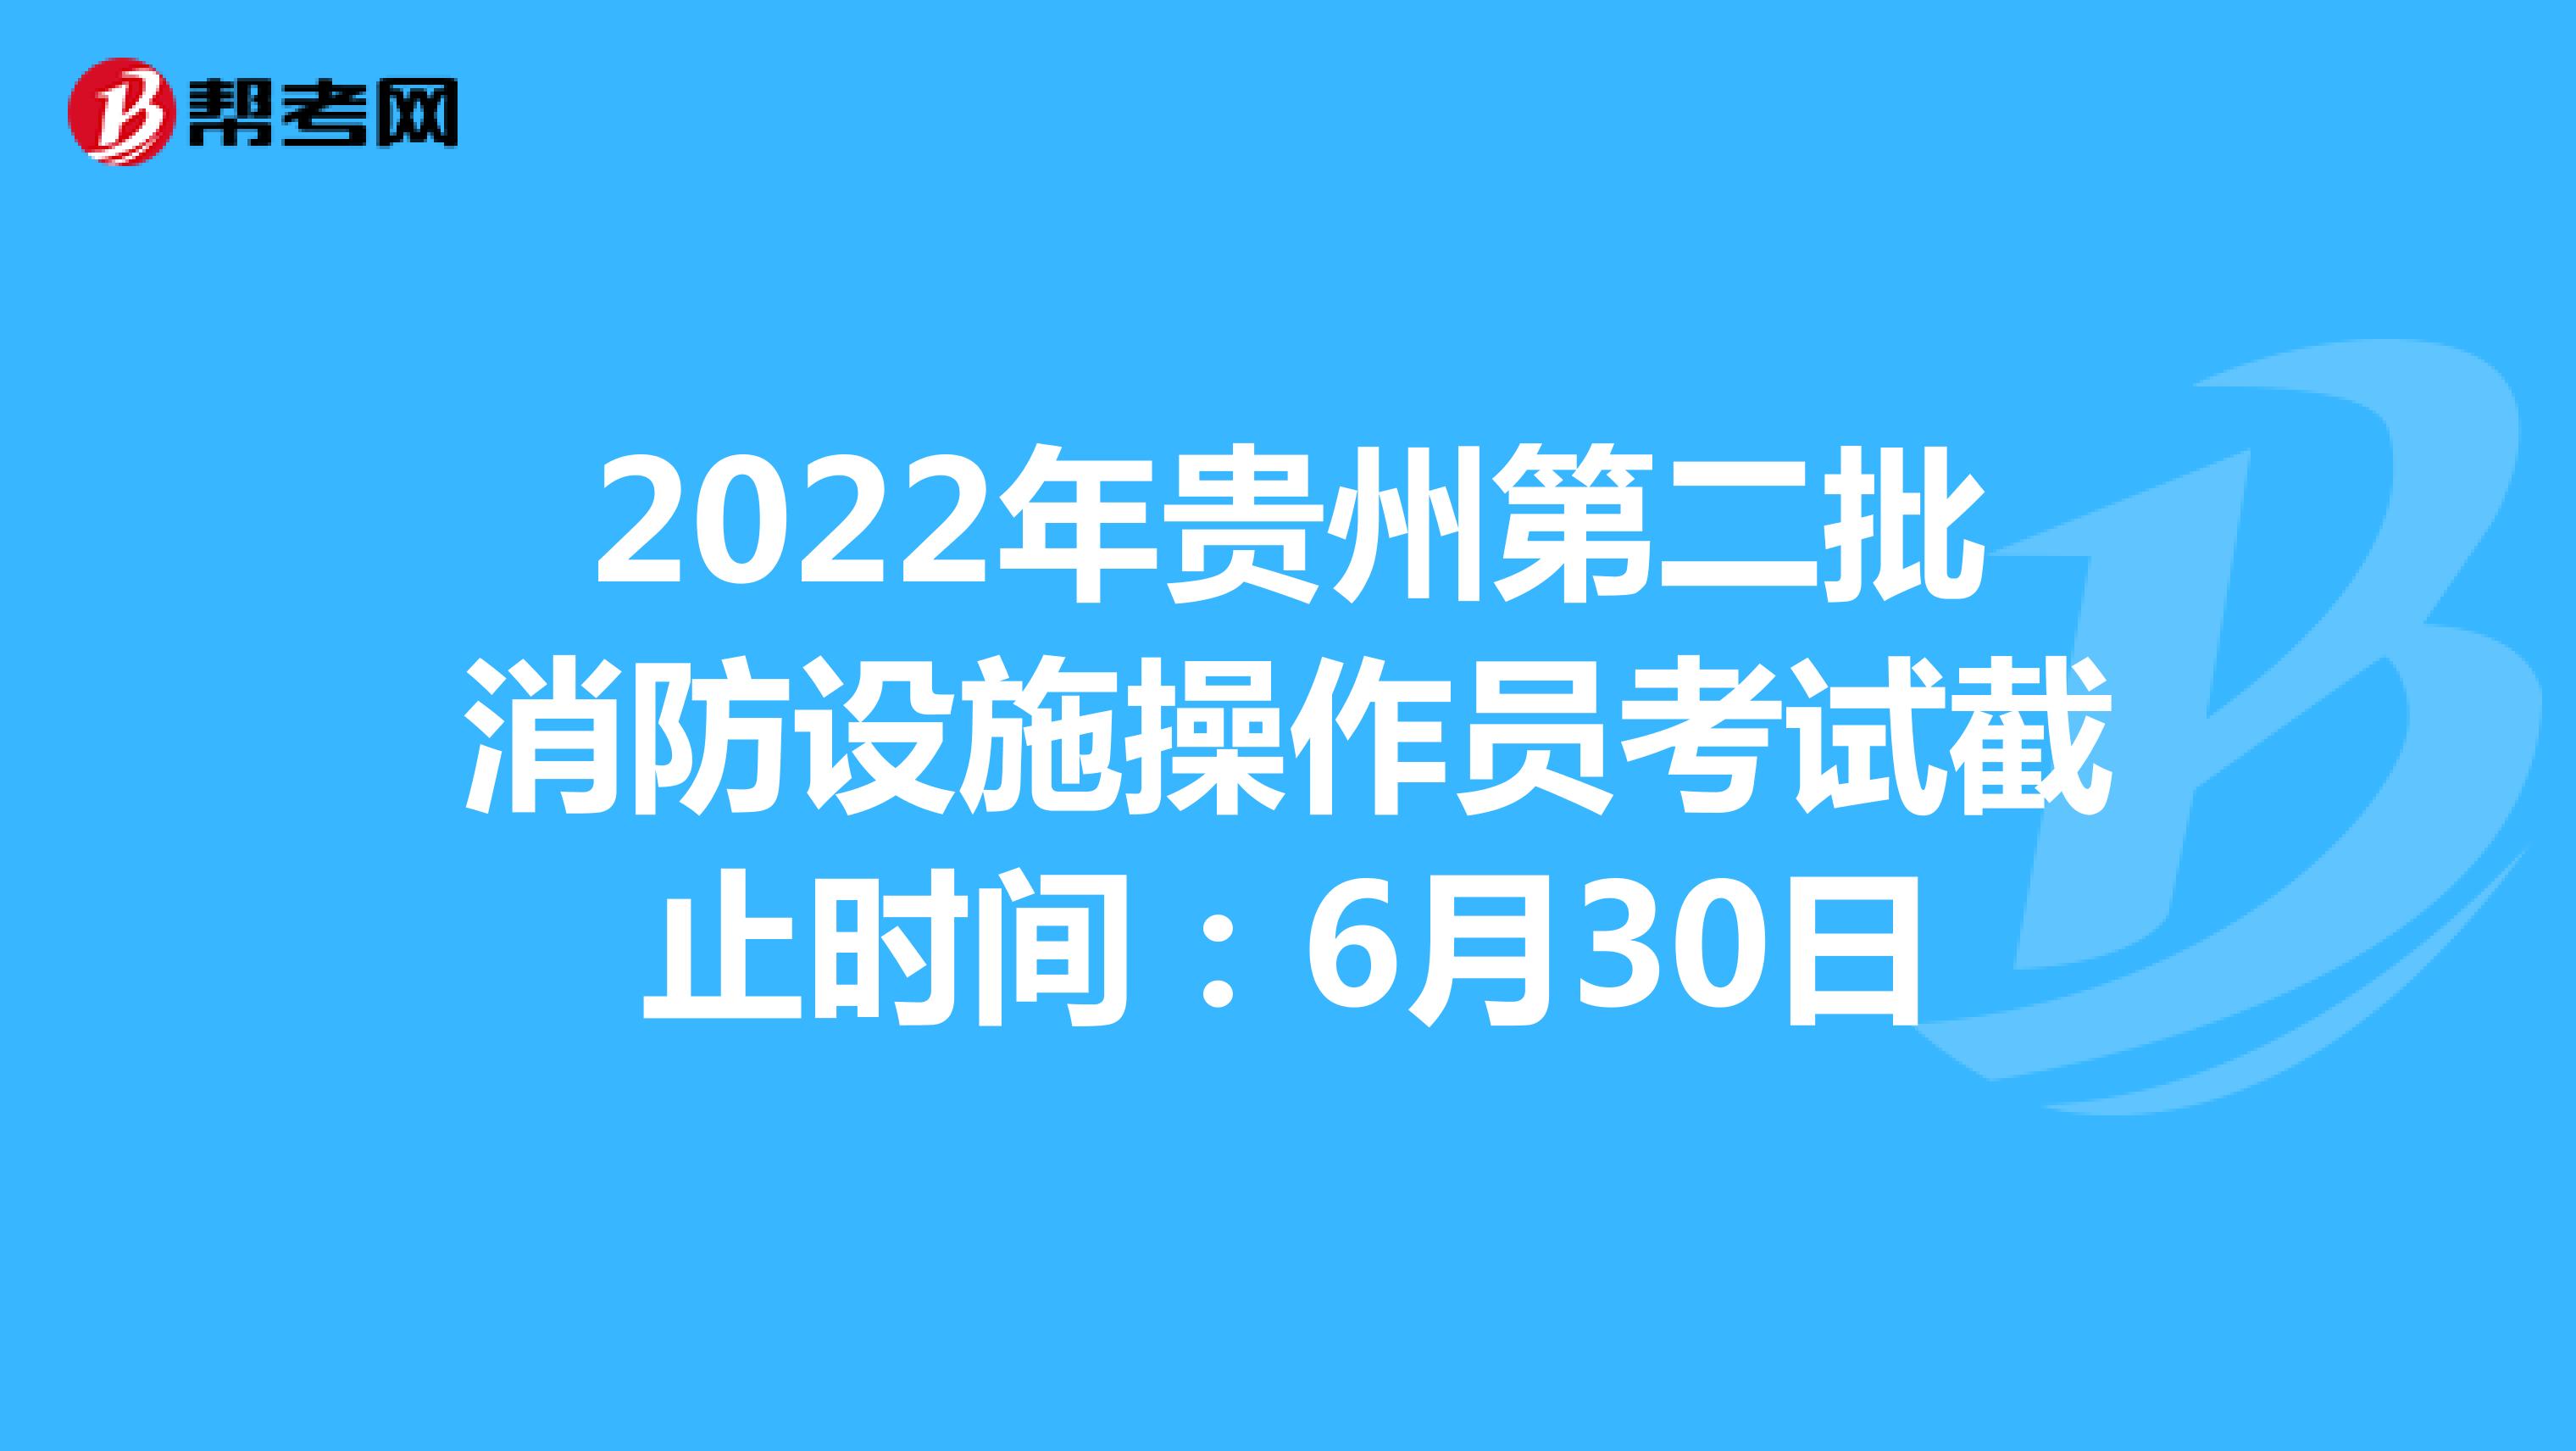 2022年贵州第二批消防设施操作员考试截止时间：6月30日